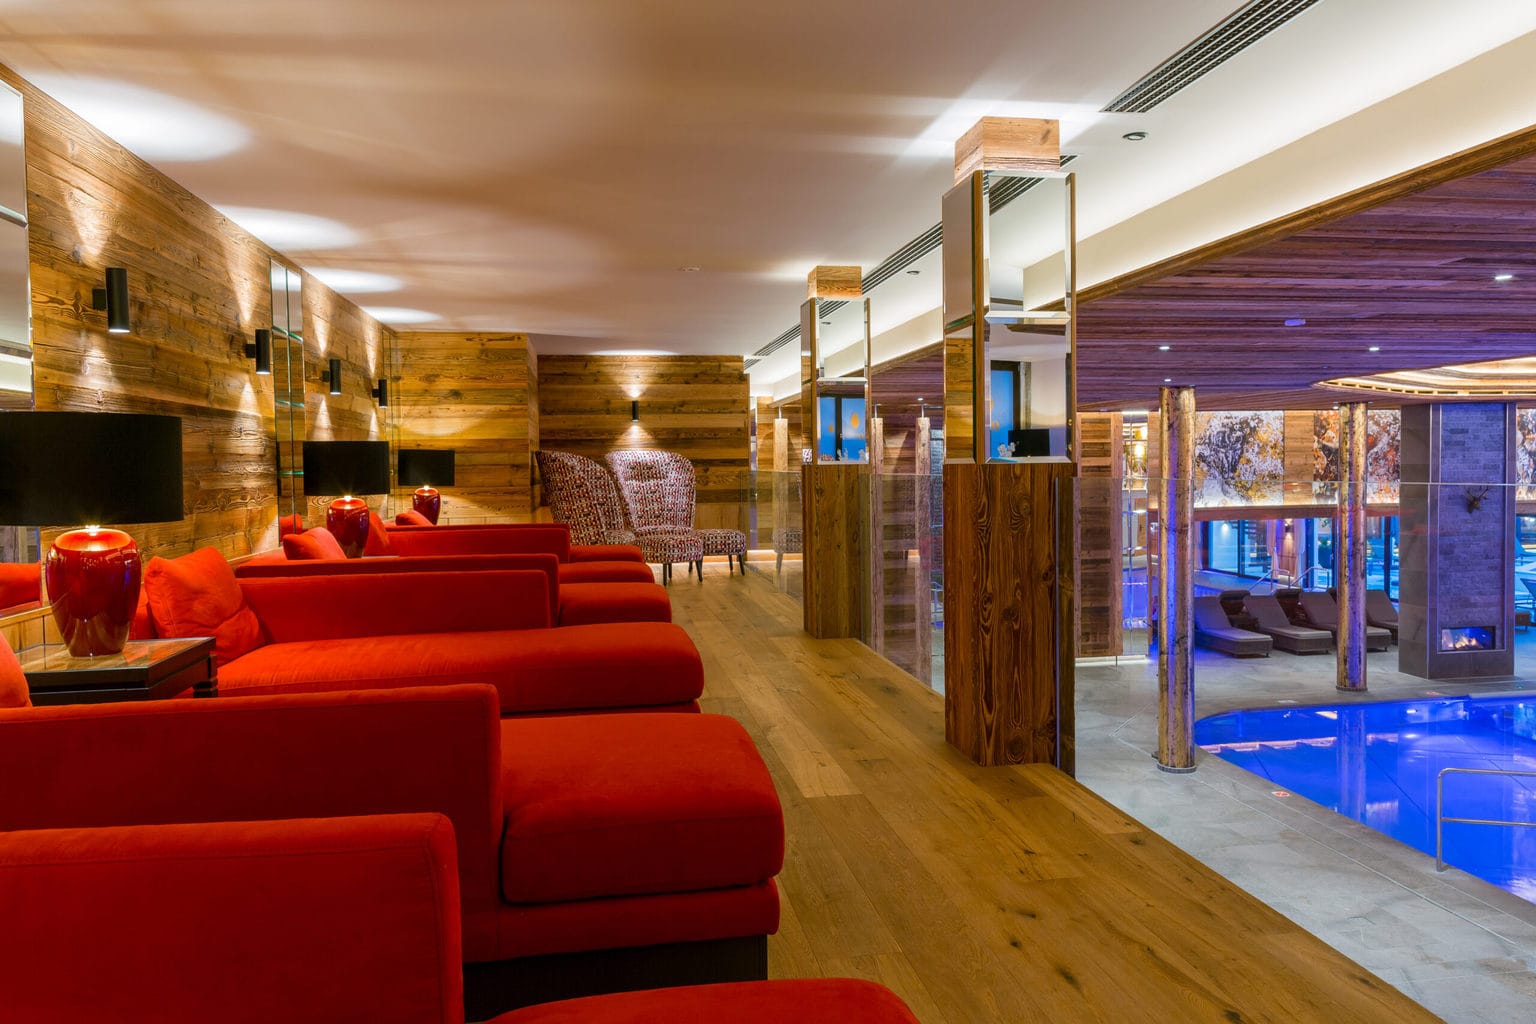 Zwembad en sauna in Ortners Resort, een wellness-hotel in beieren